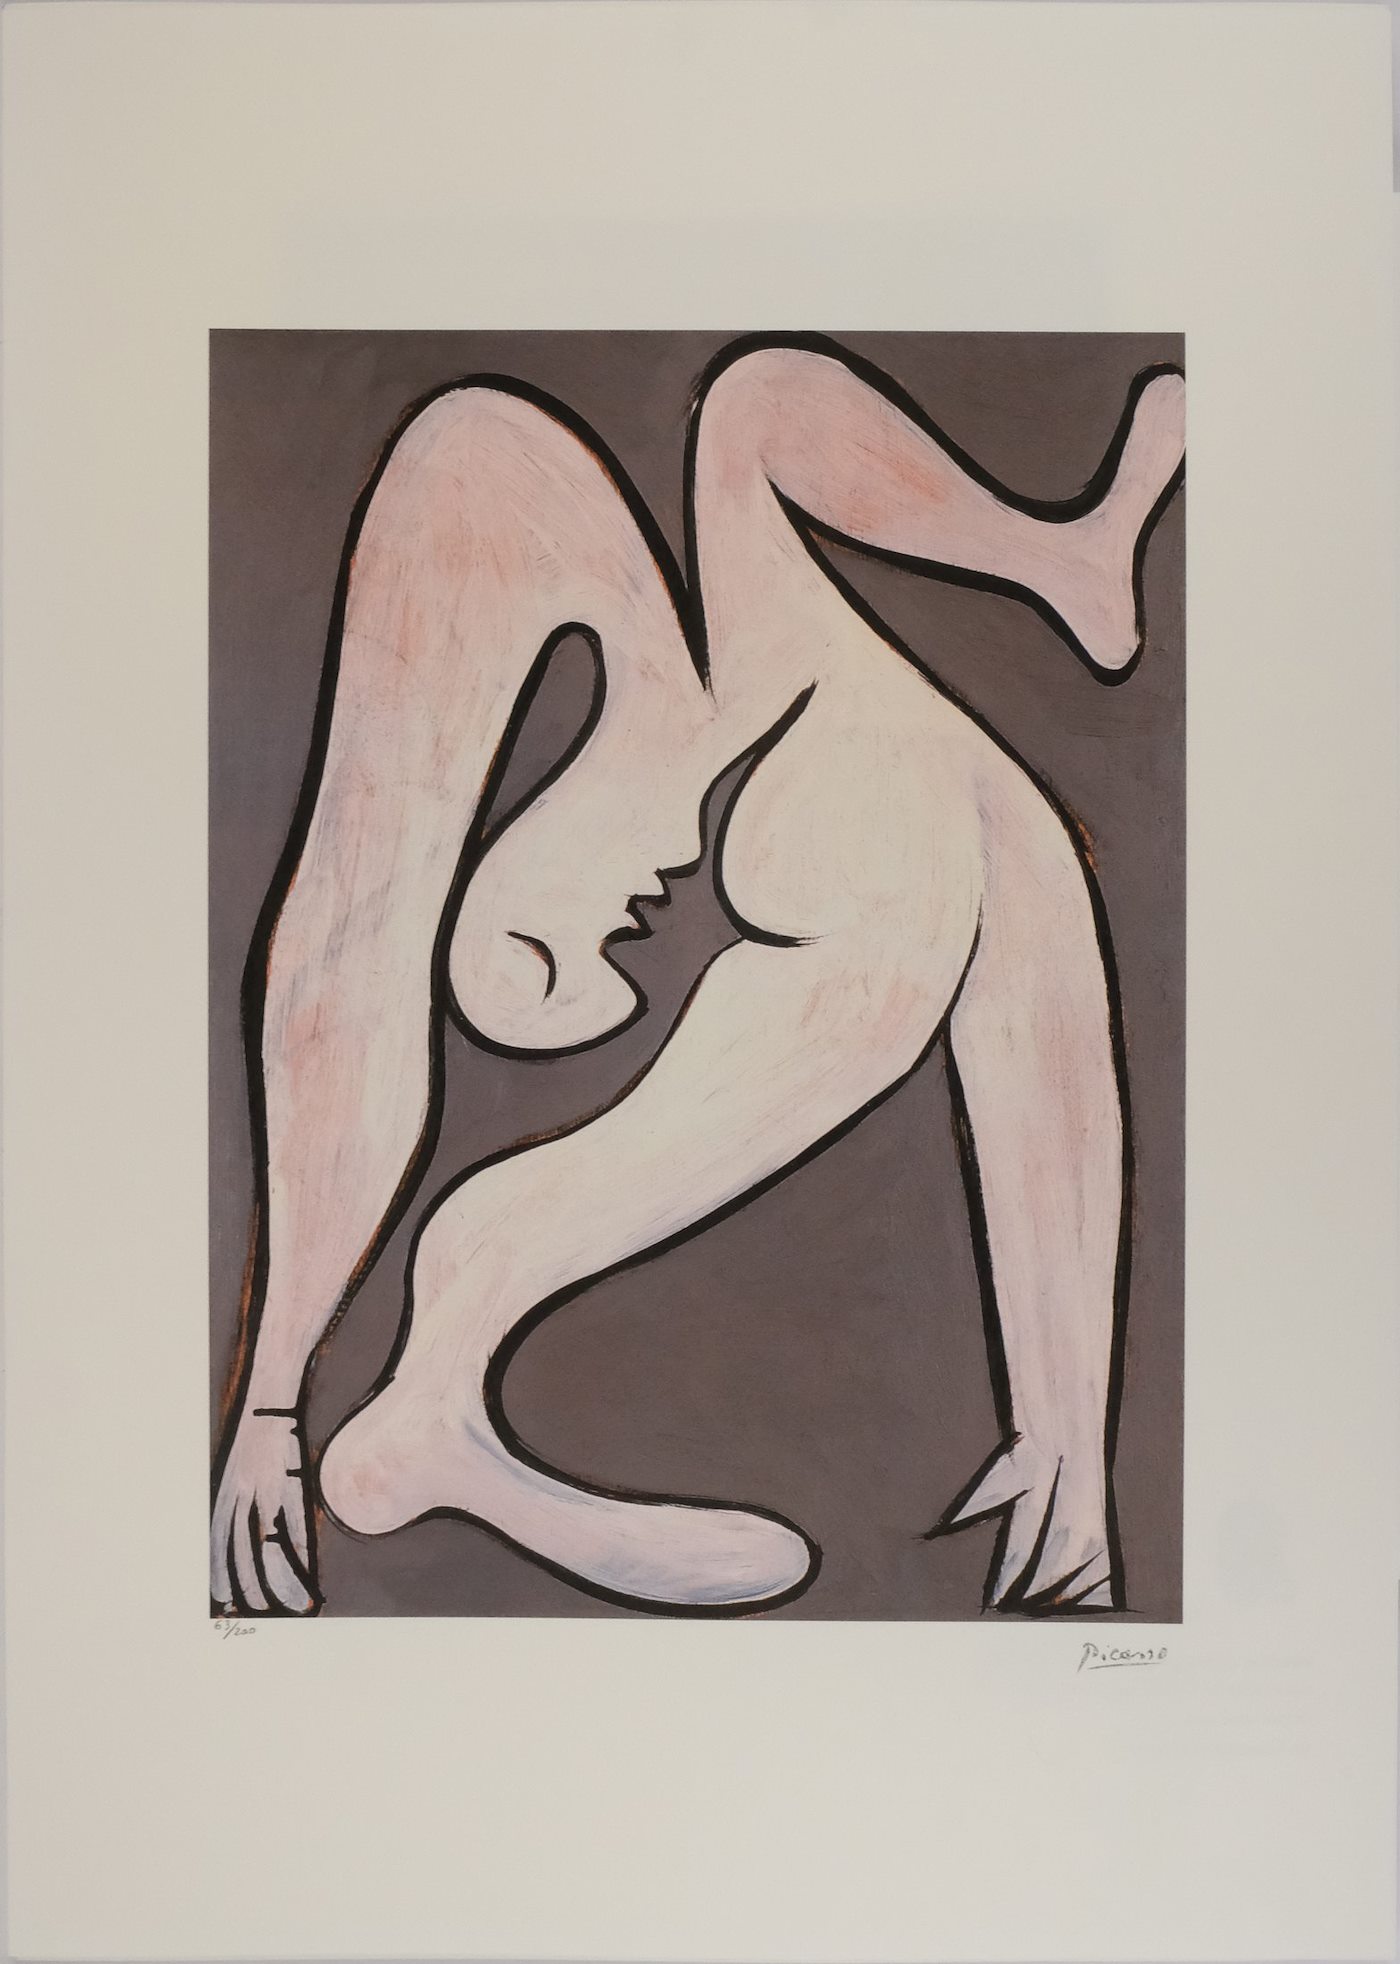 Pablo Picasso - Acrobat